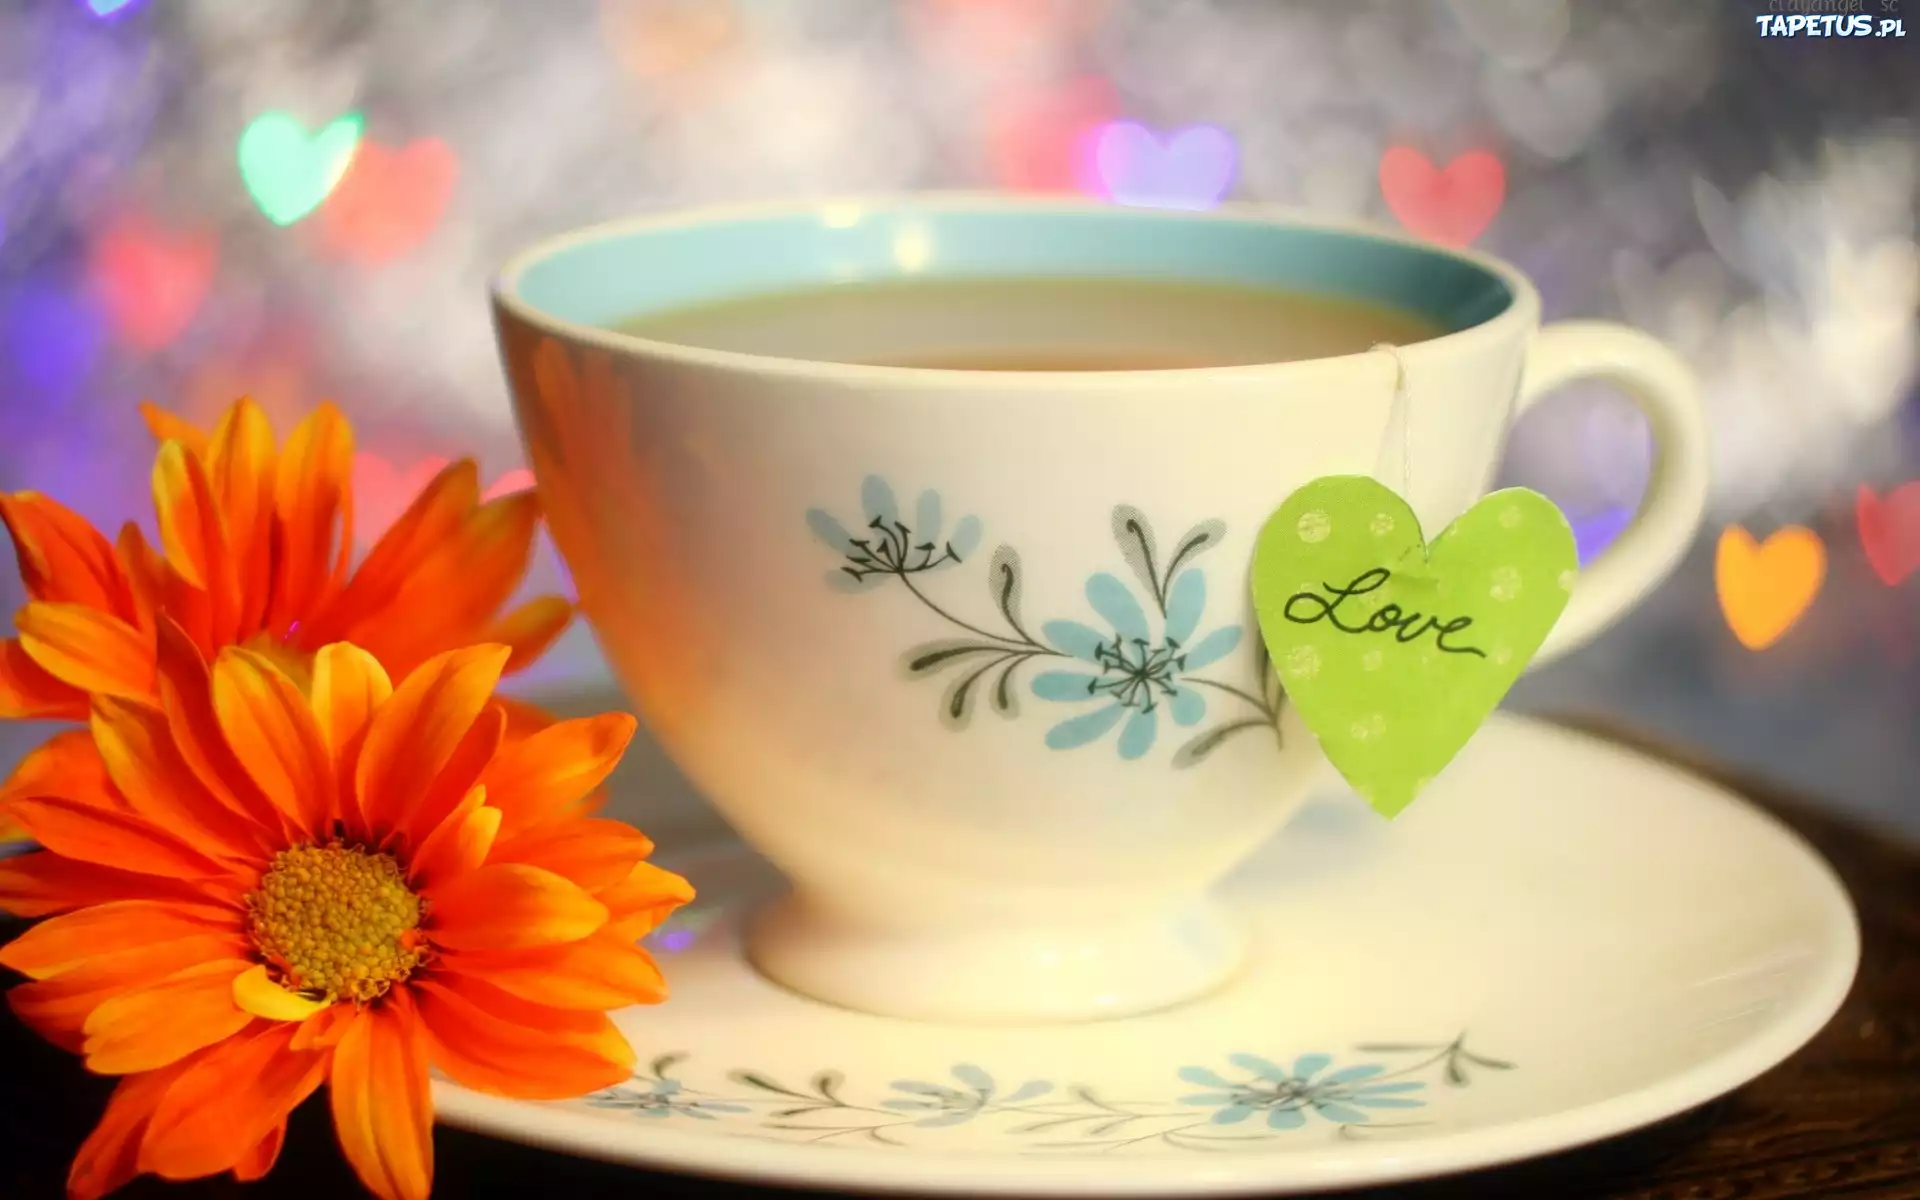 Добрейшее утречко картинки с надписями настроение. Цветы в кружке. Чай с цветами. Чашка чая. Доброе утро с чаем.